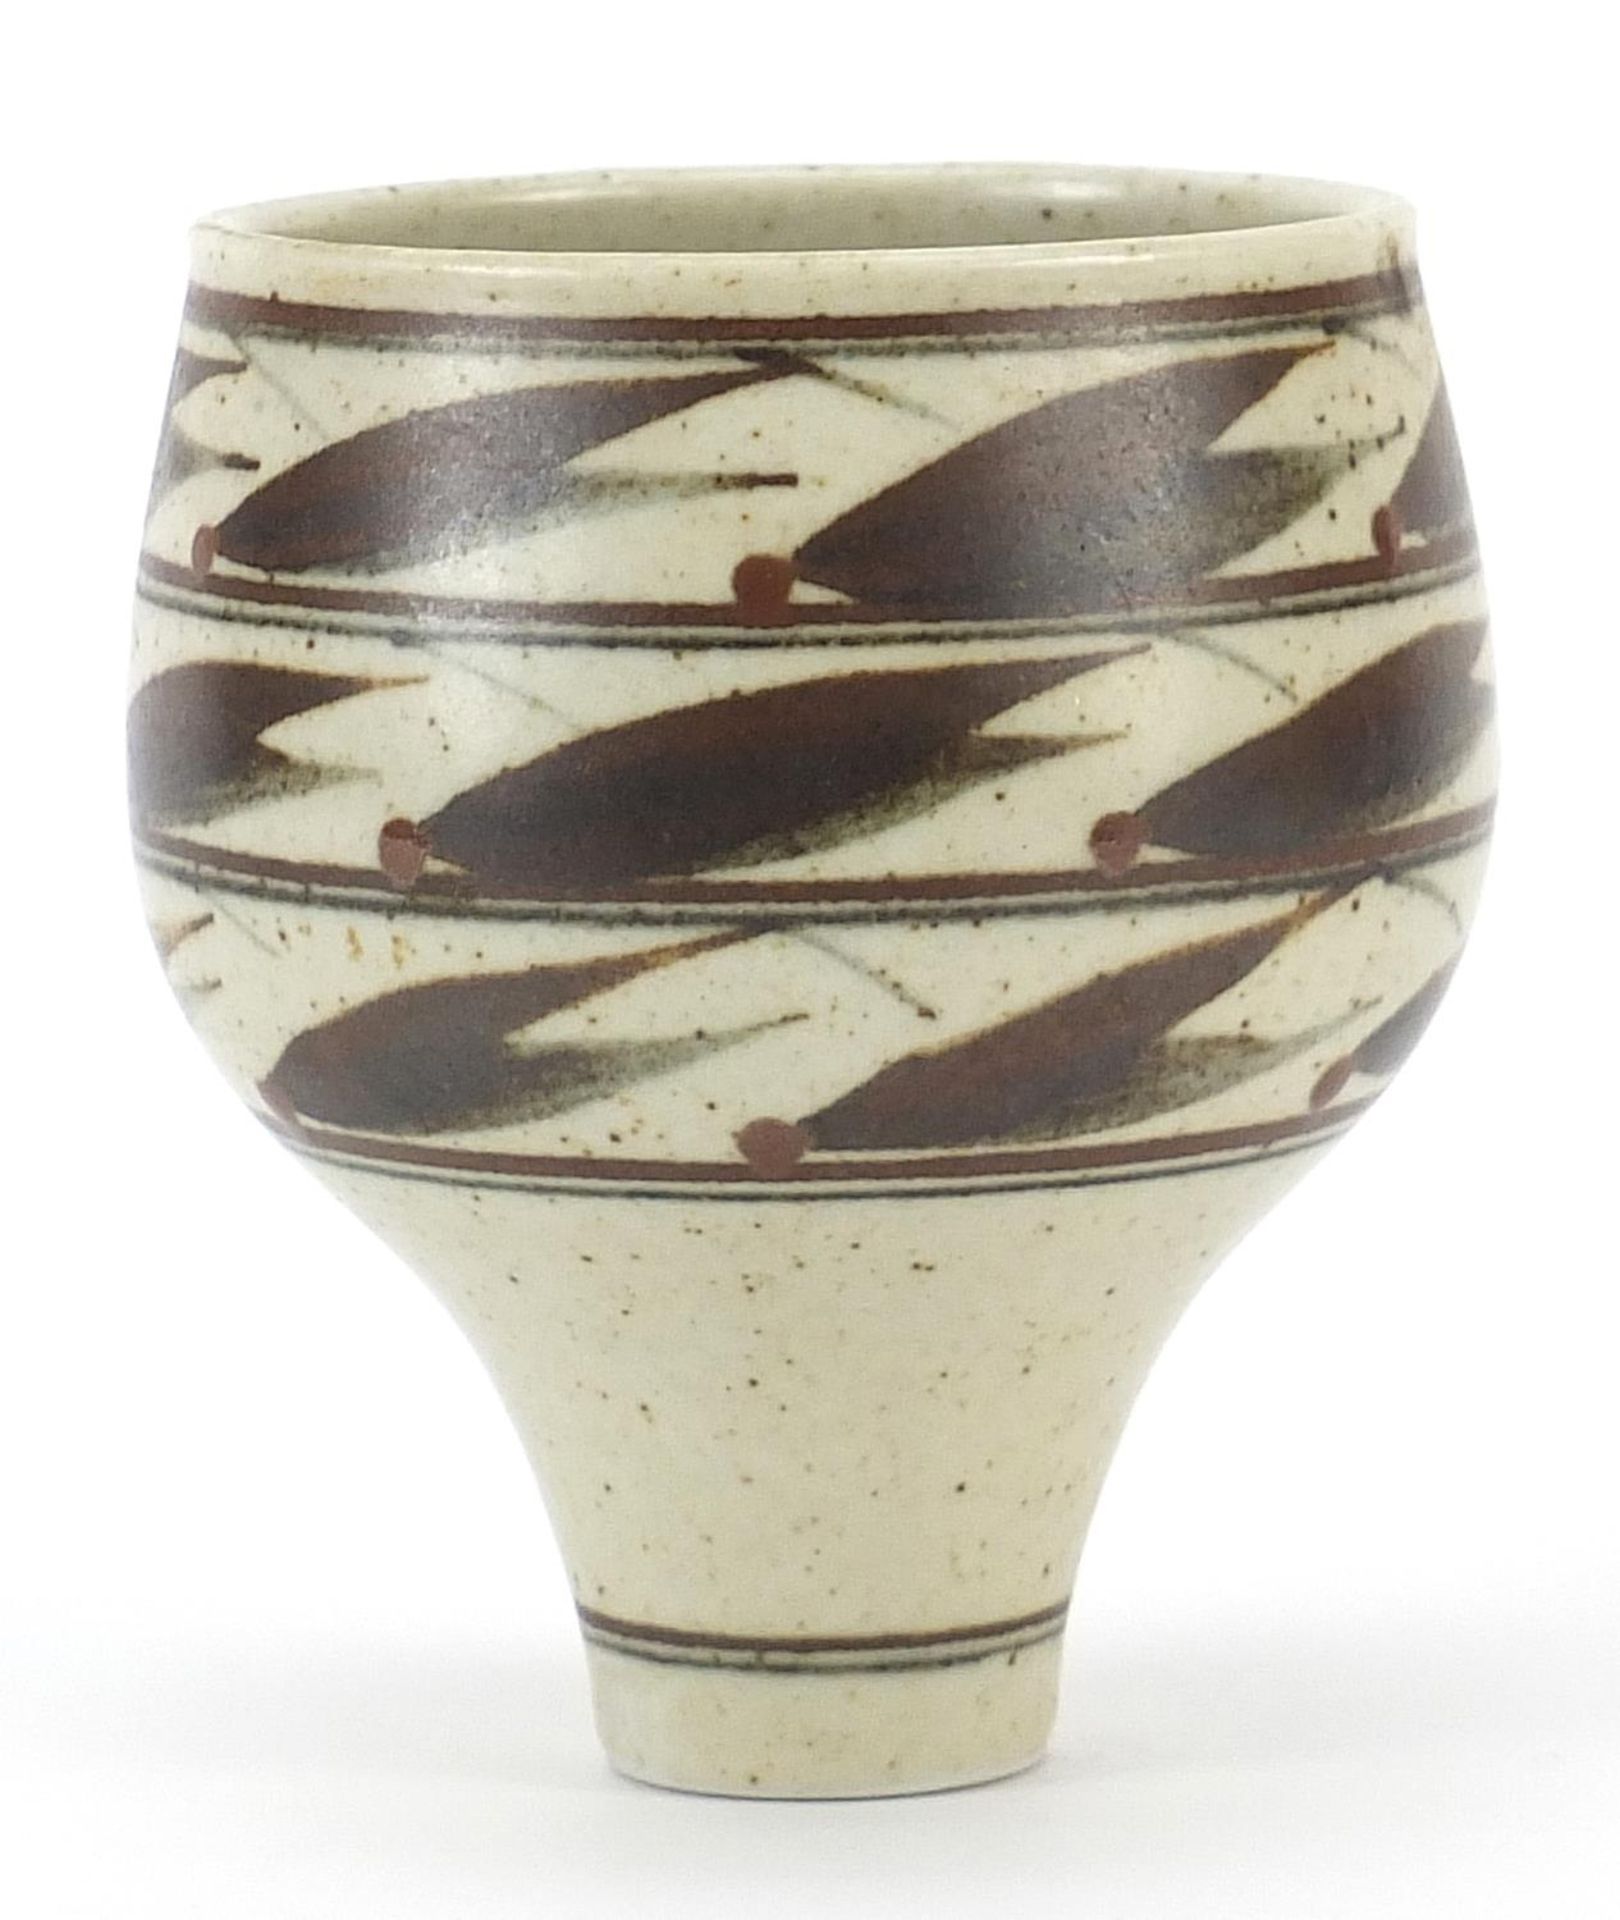 Derek Clarkson studio pottery bowl, 12.5cm high - Image 2 of 4